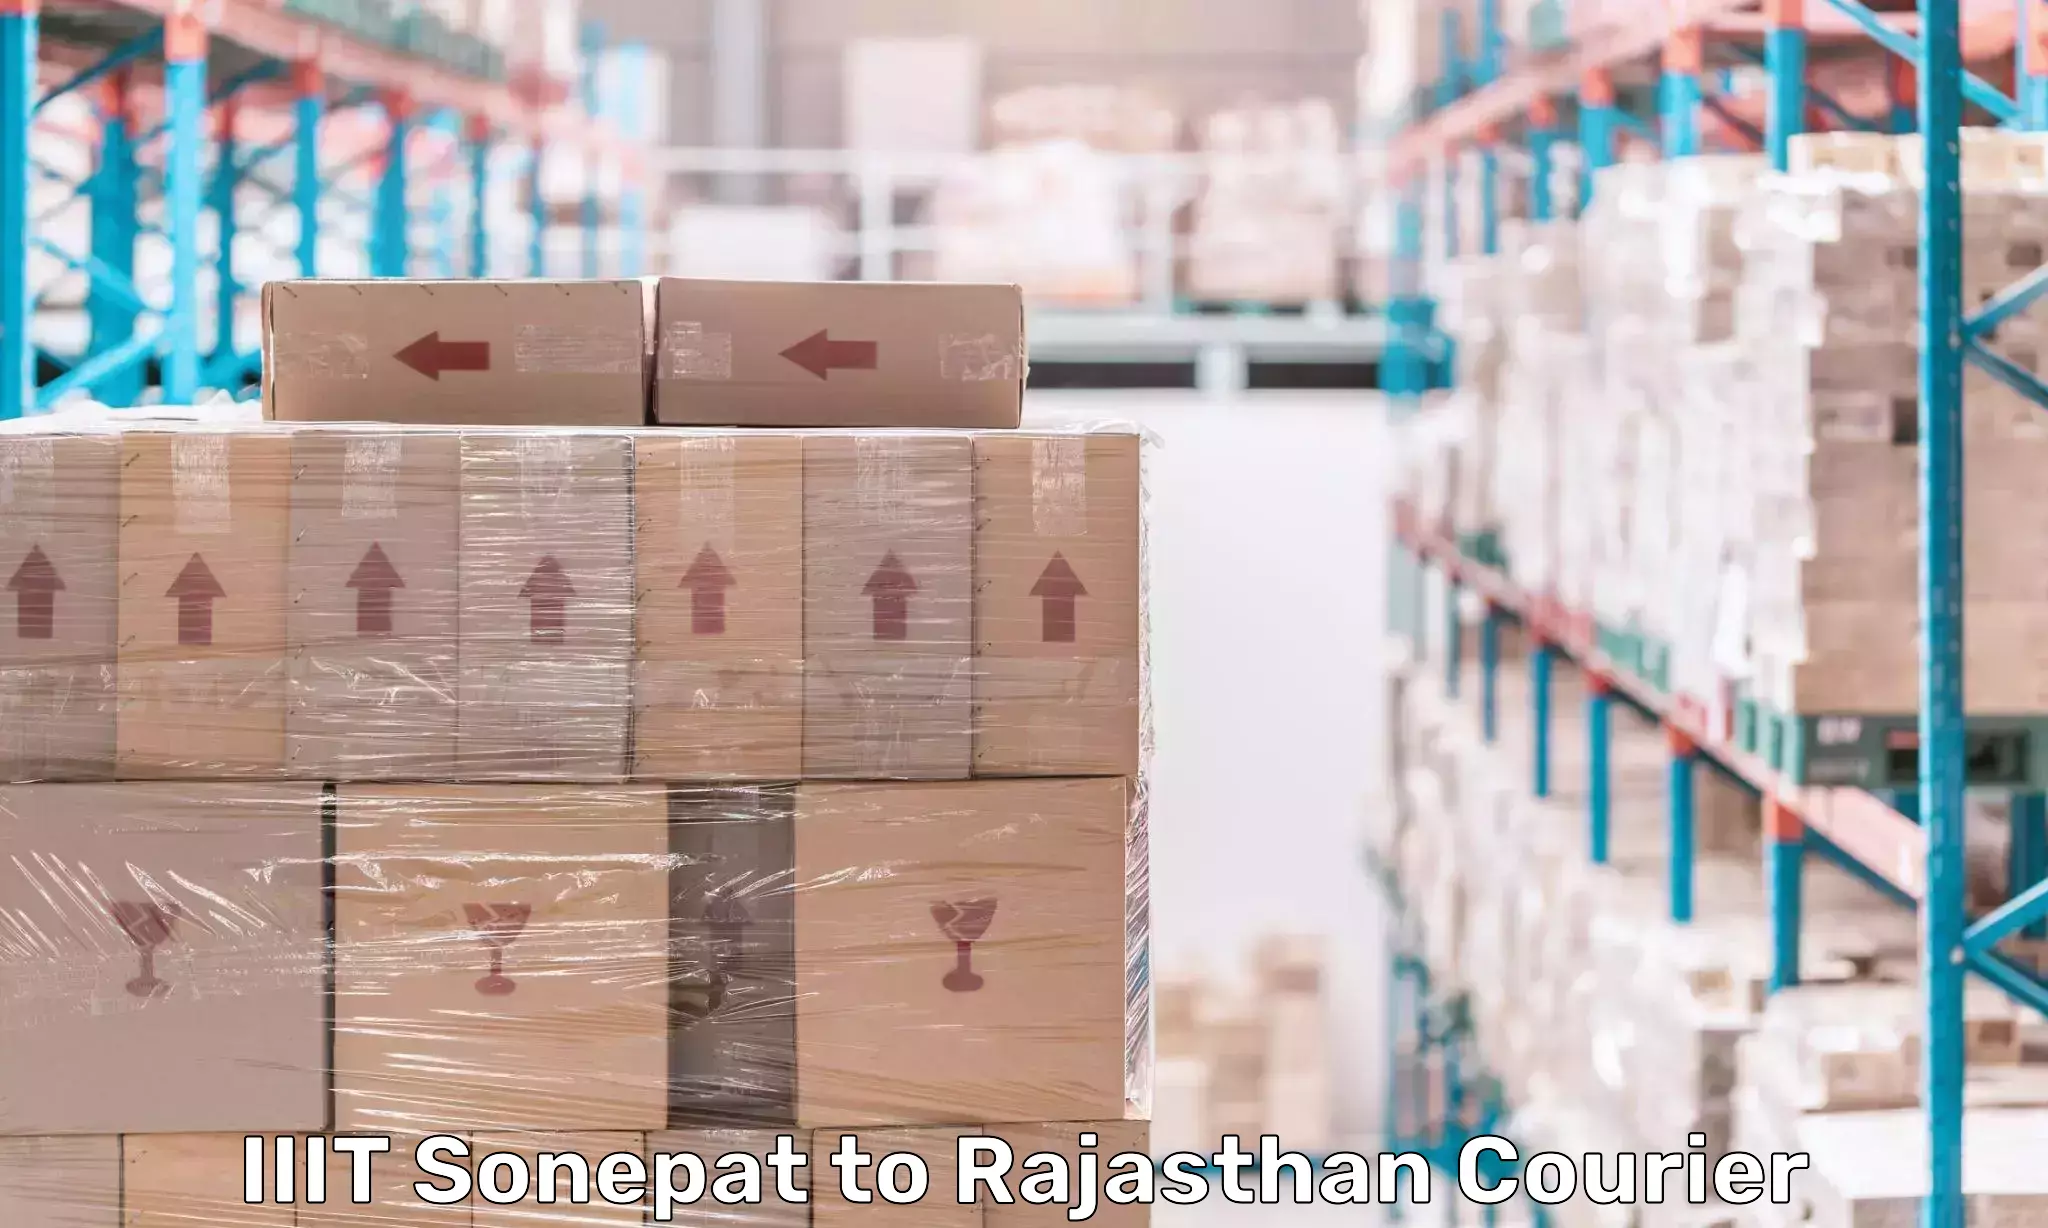 International courier networks IIIT Sonepat to Rajasthan